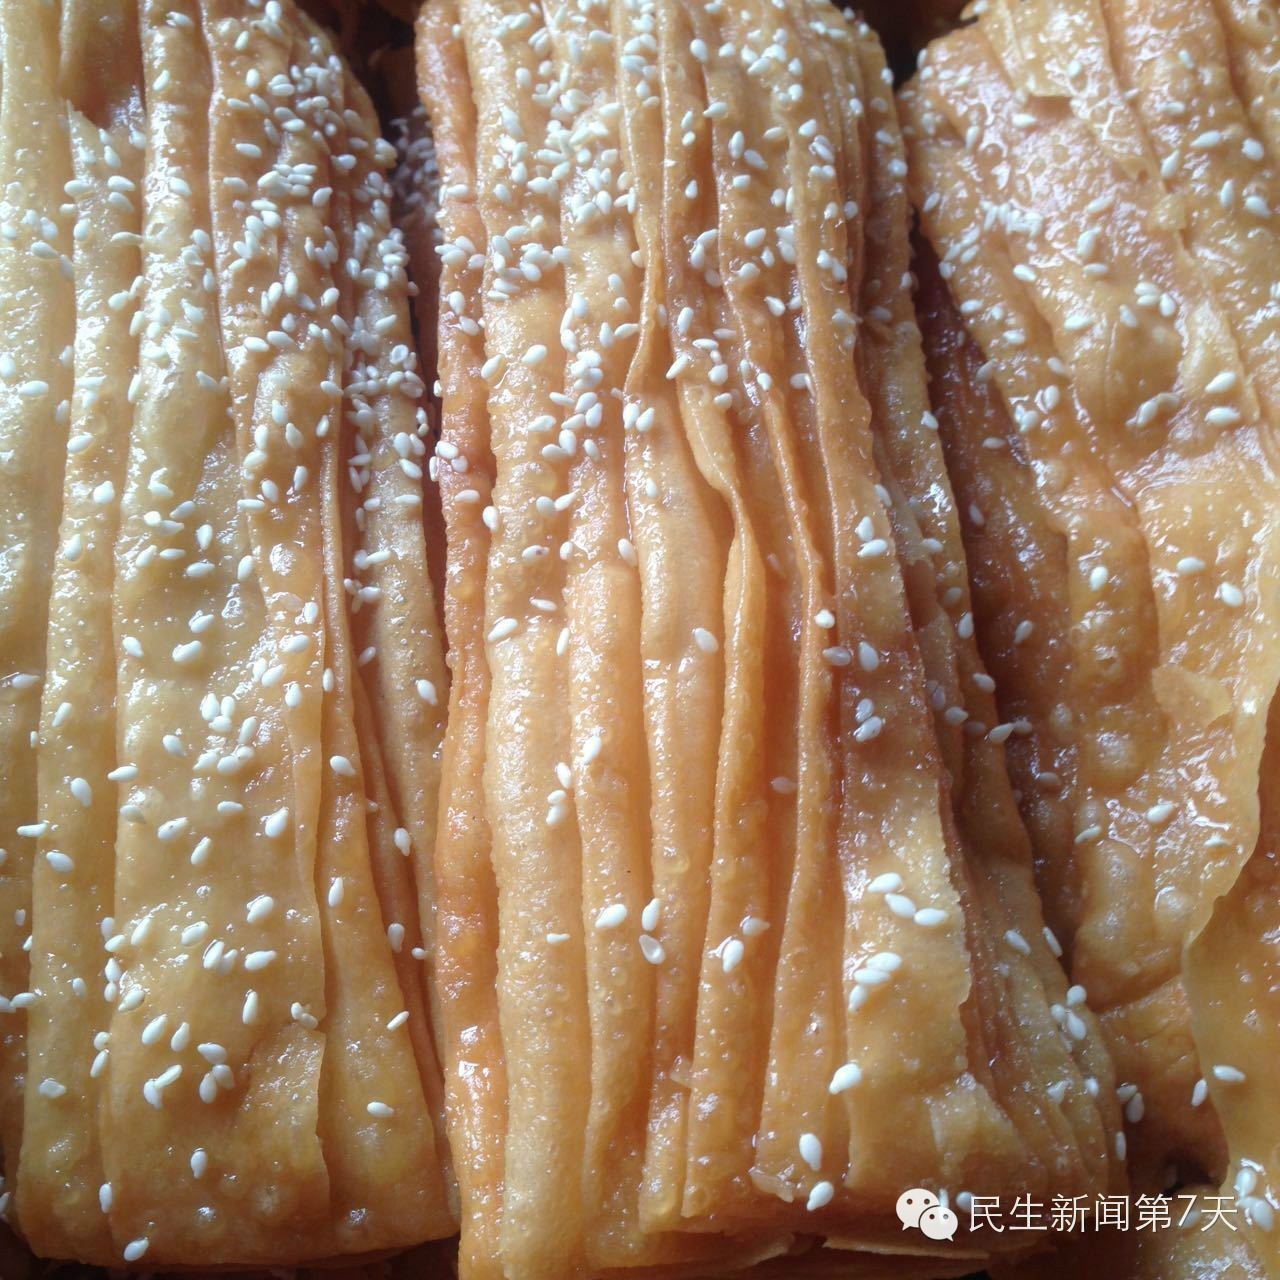 蜜食(鄭州、許昌等地的一種傳統美食)